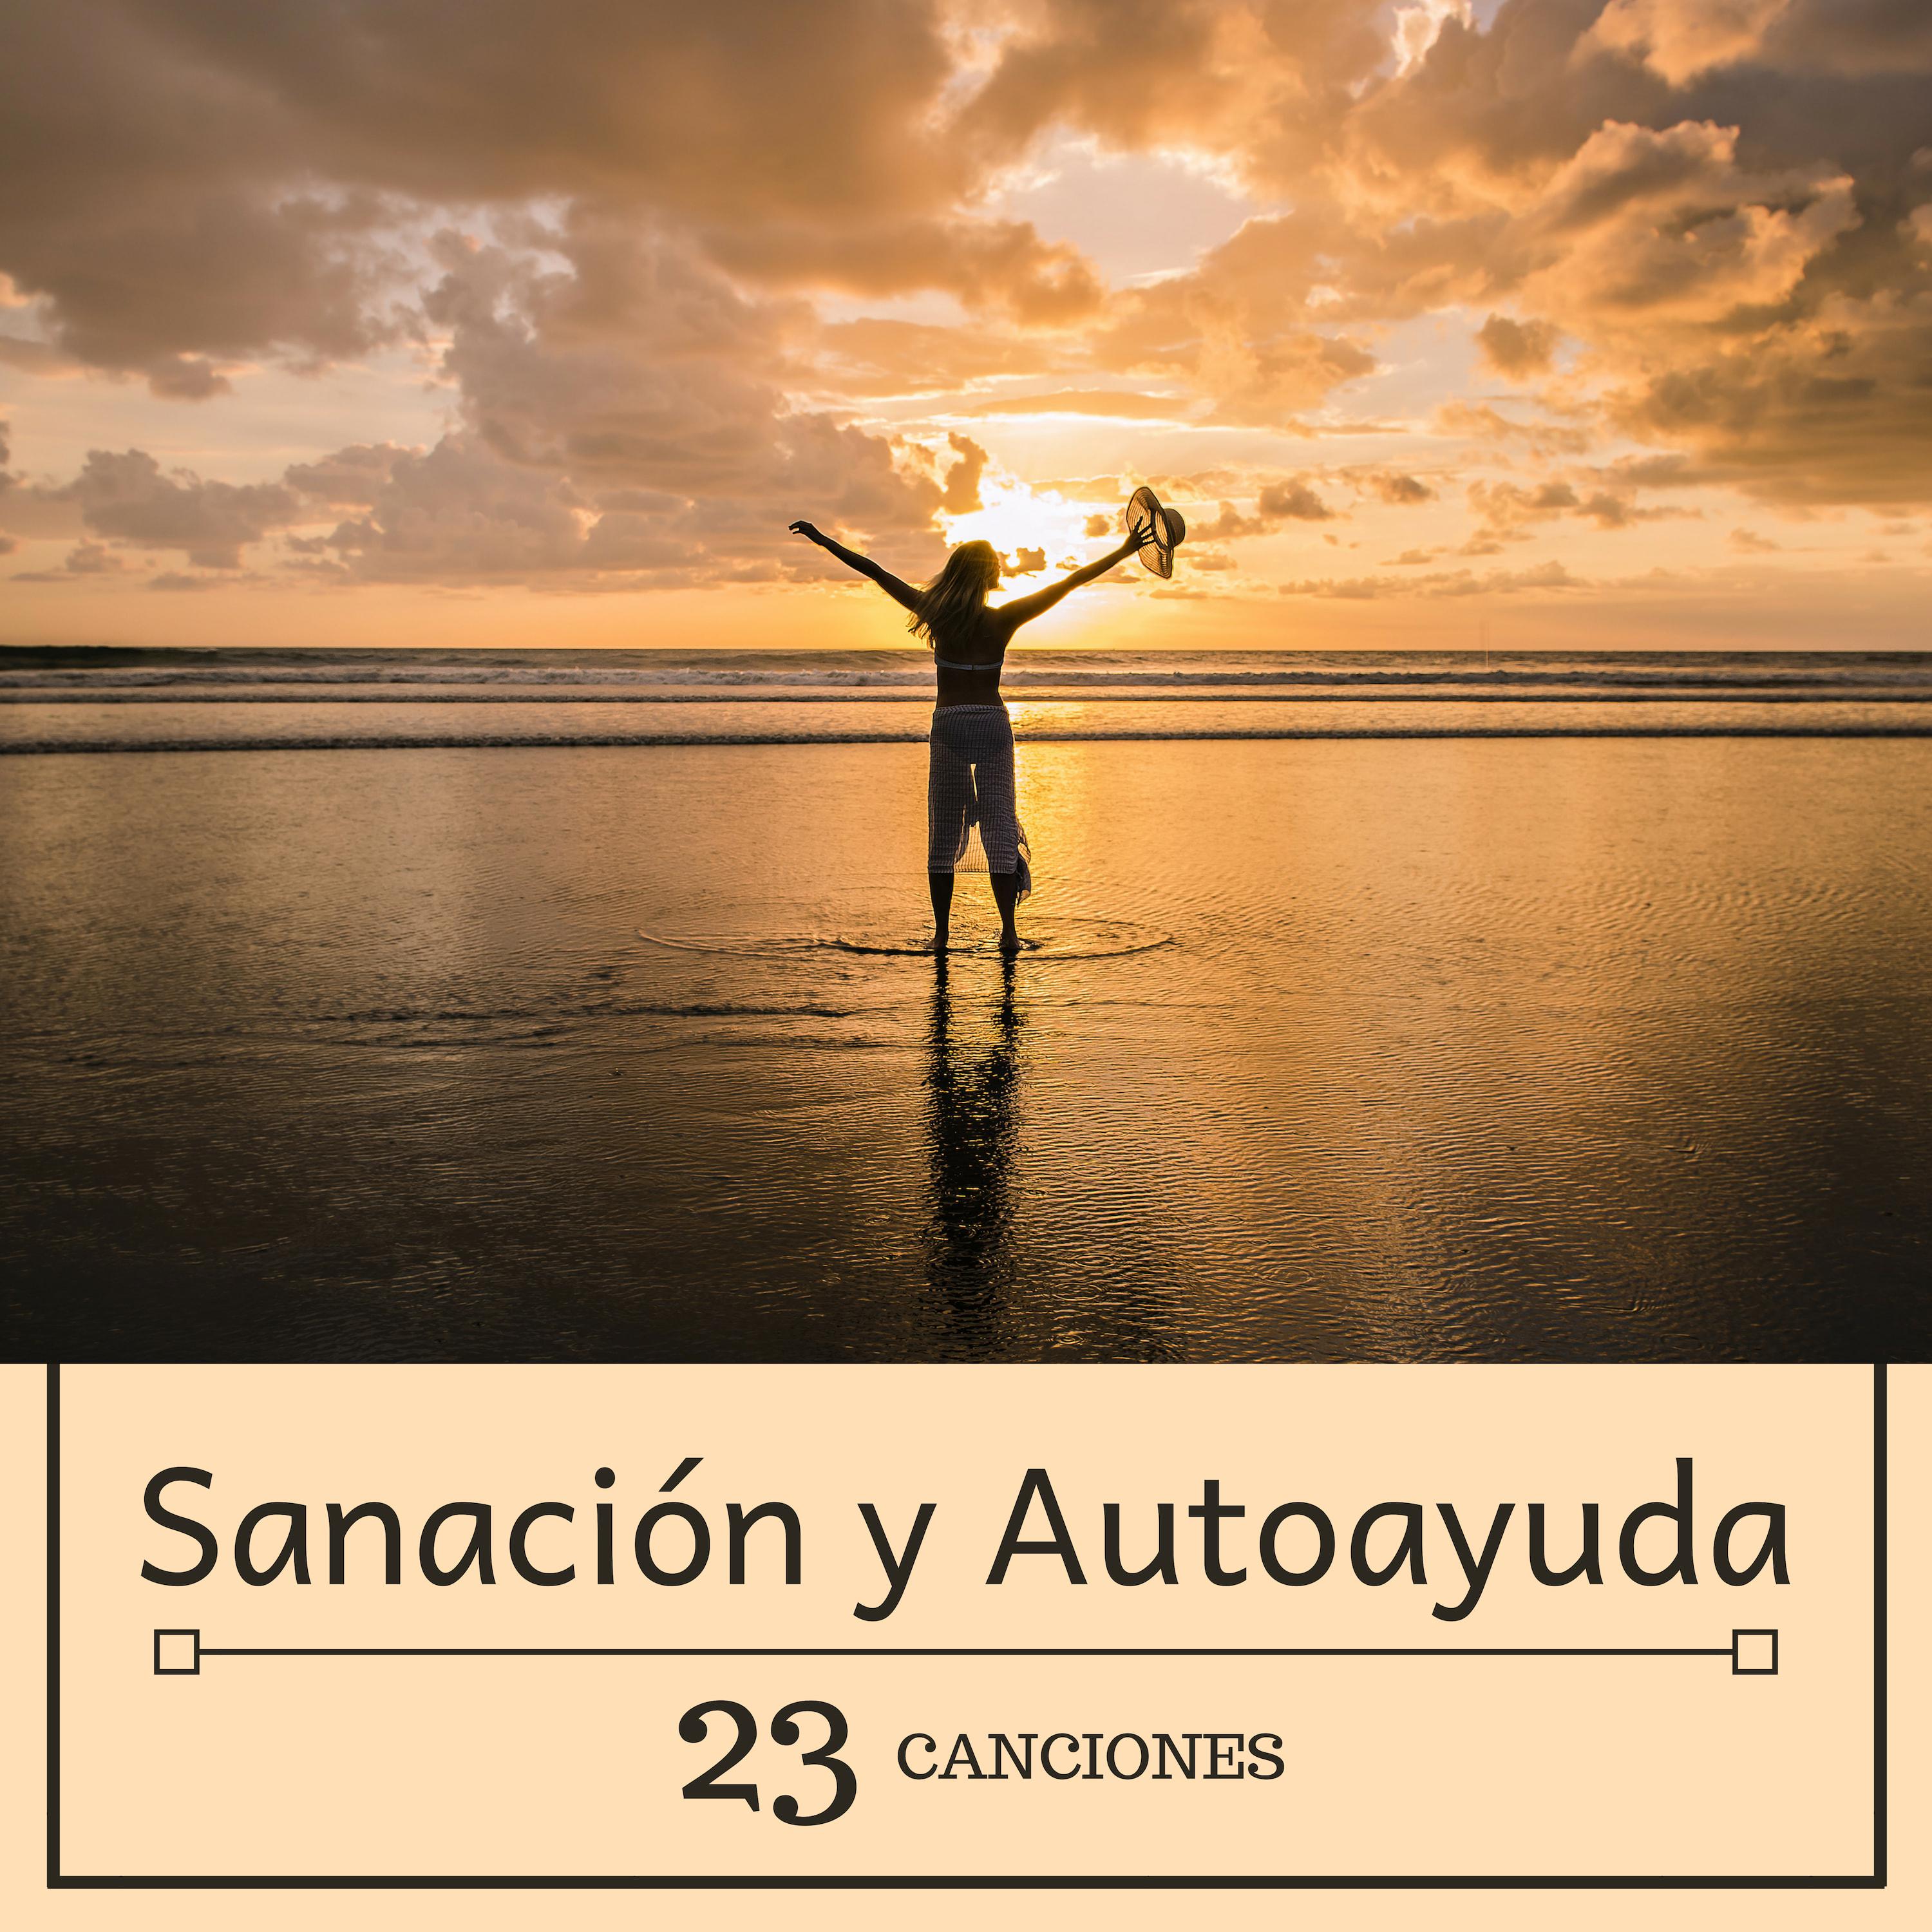 Sanacio n y Autoayuda: 23 Canciones  La Banda Sonora Perfecta Momentos de Necesidad Espiritual y Emocional